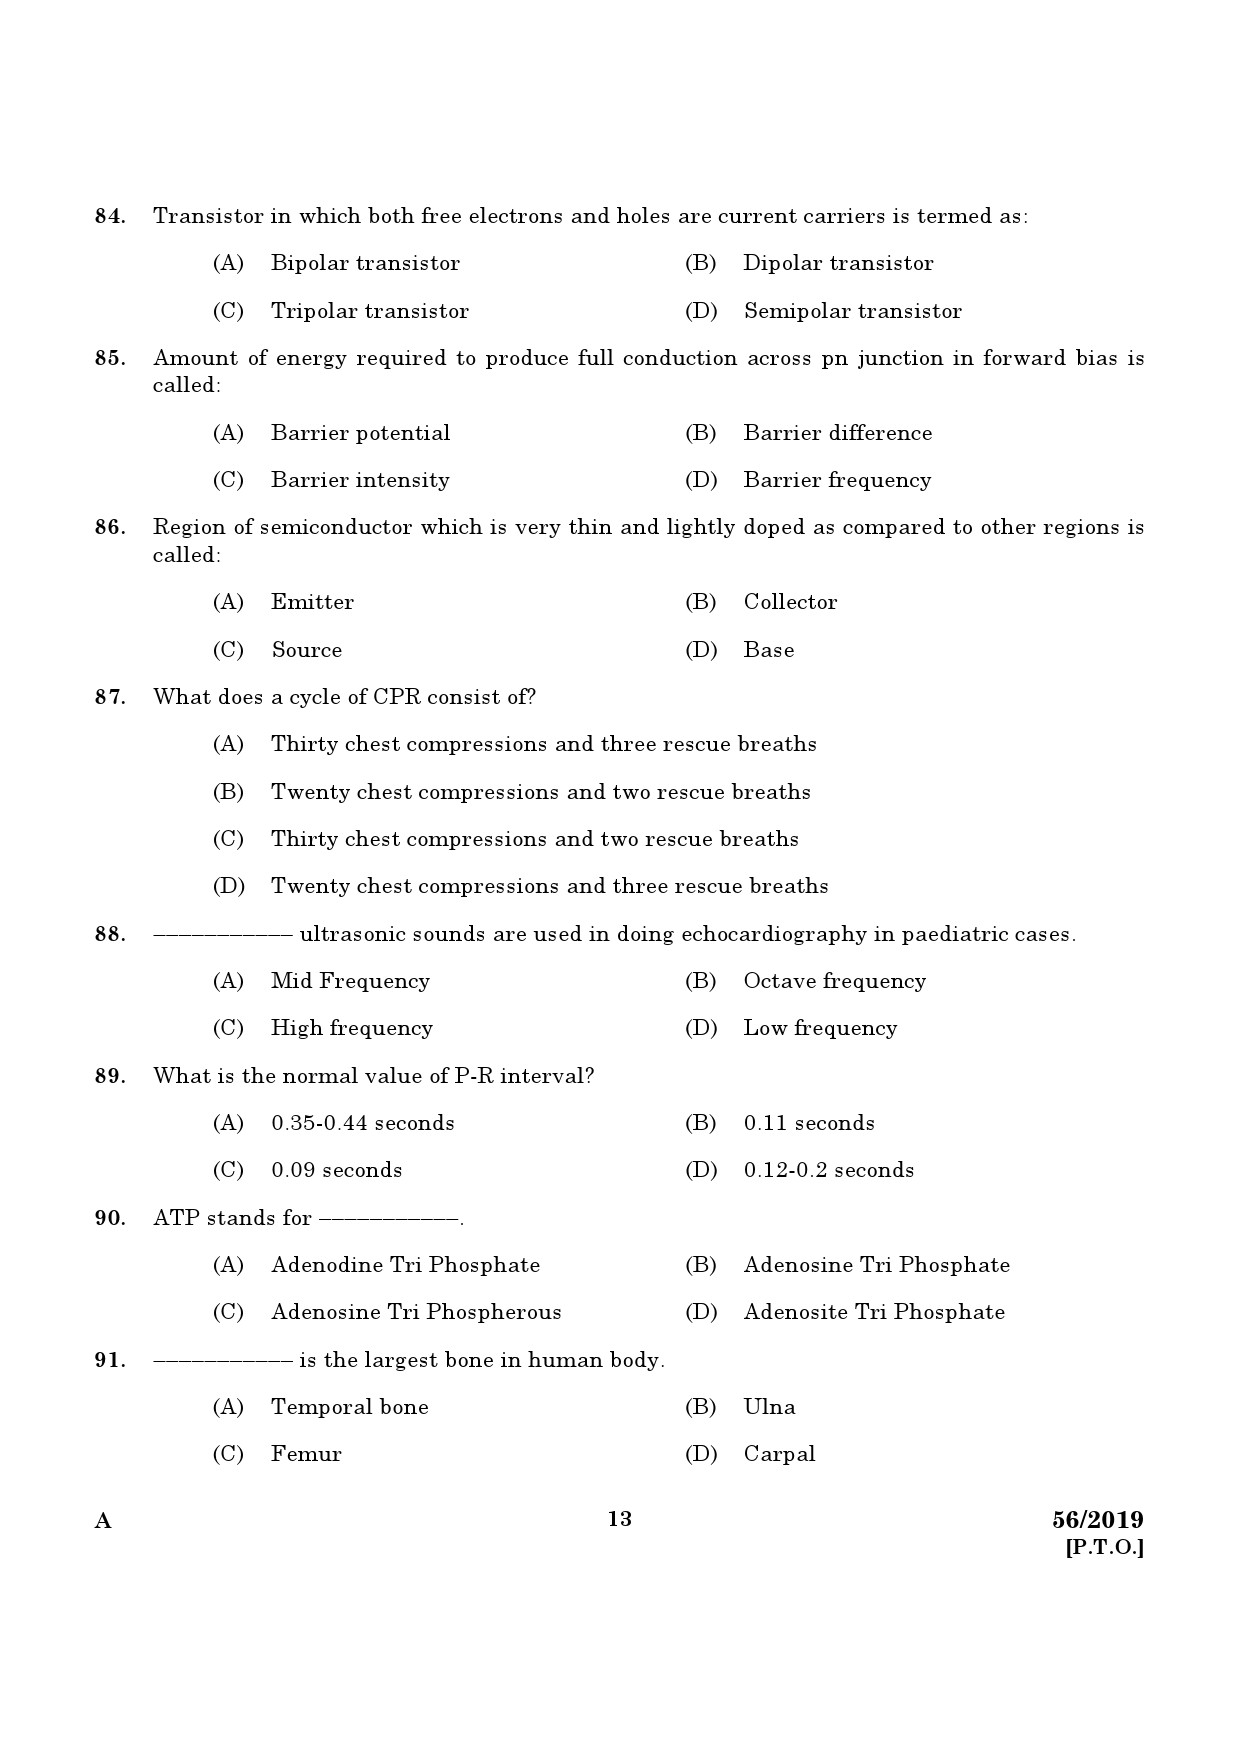 KPSC ECG Technician Grade II Exam Question Paper 0562019 11